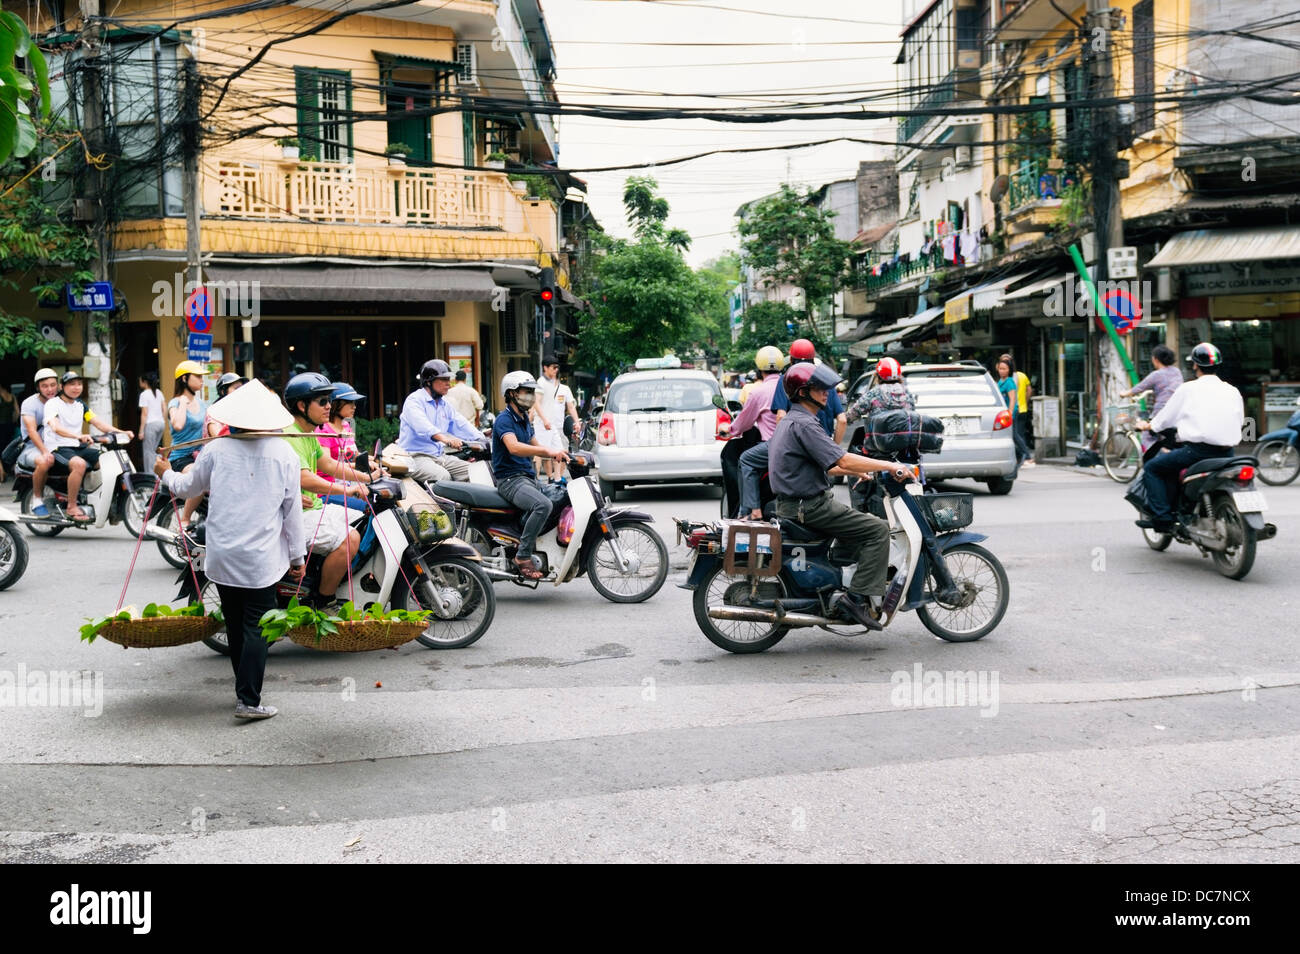 Hay que cruzar una calle muy transitada en el barrio antiguo de Hanoi, Vietnam Foto de stock